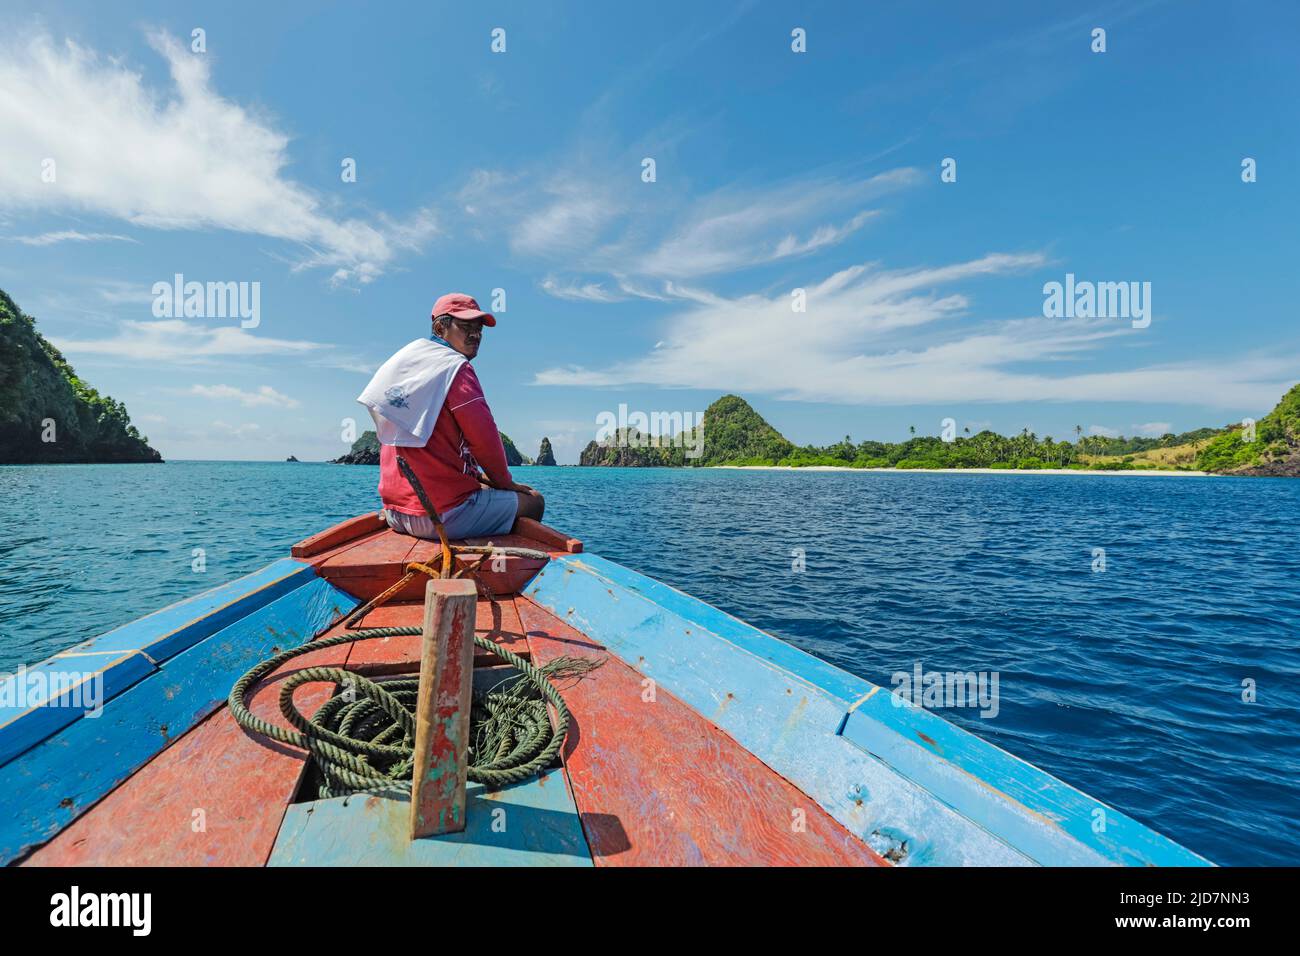 Capitano di viaggio in barca al largo dell'isola di Siau con la bella sabbia bianca Masare Island oltre. Masare, Siau, Arcipelago di Sangihe, Sulawesi settentrionale, Indonesia Foto Stock